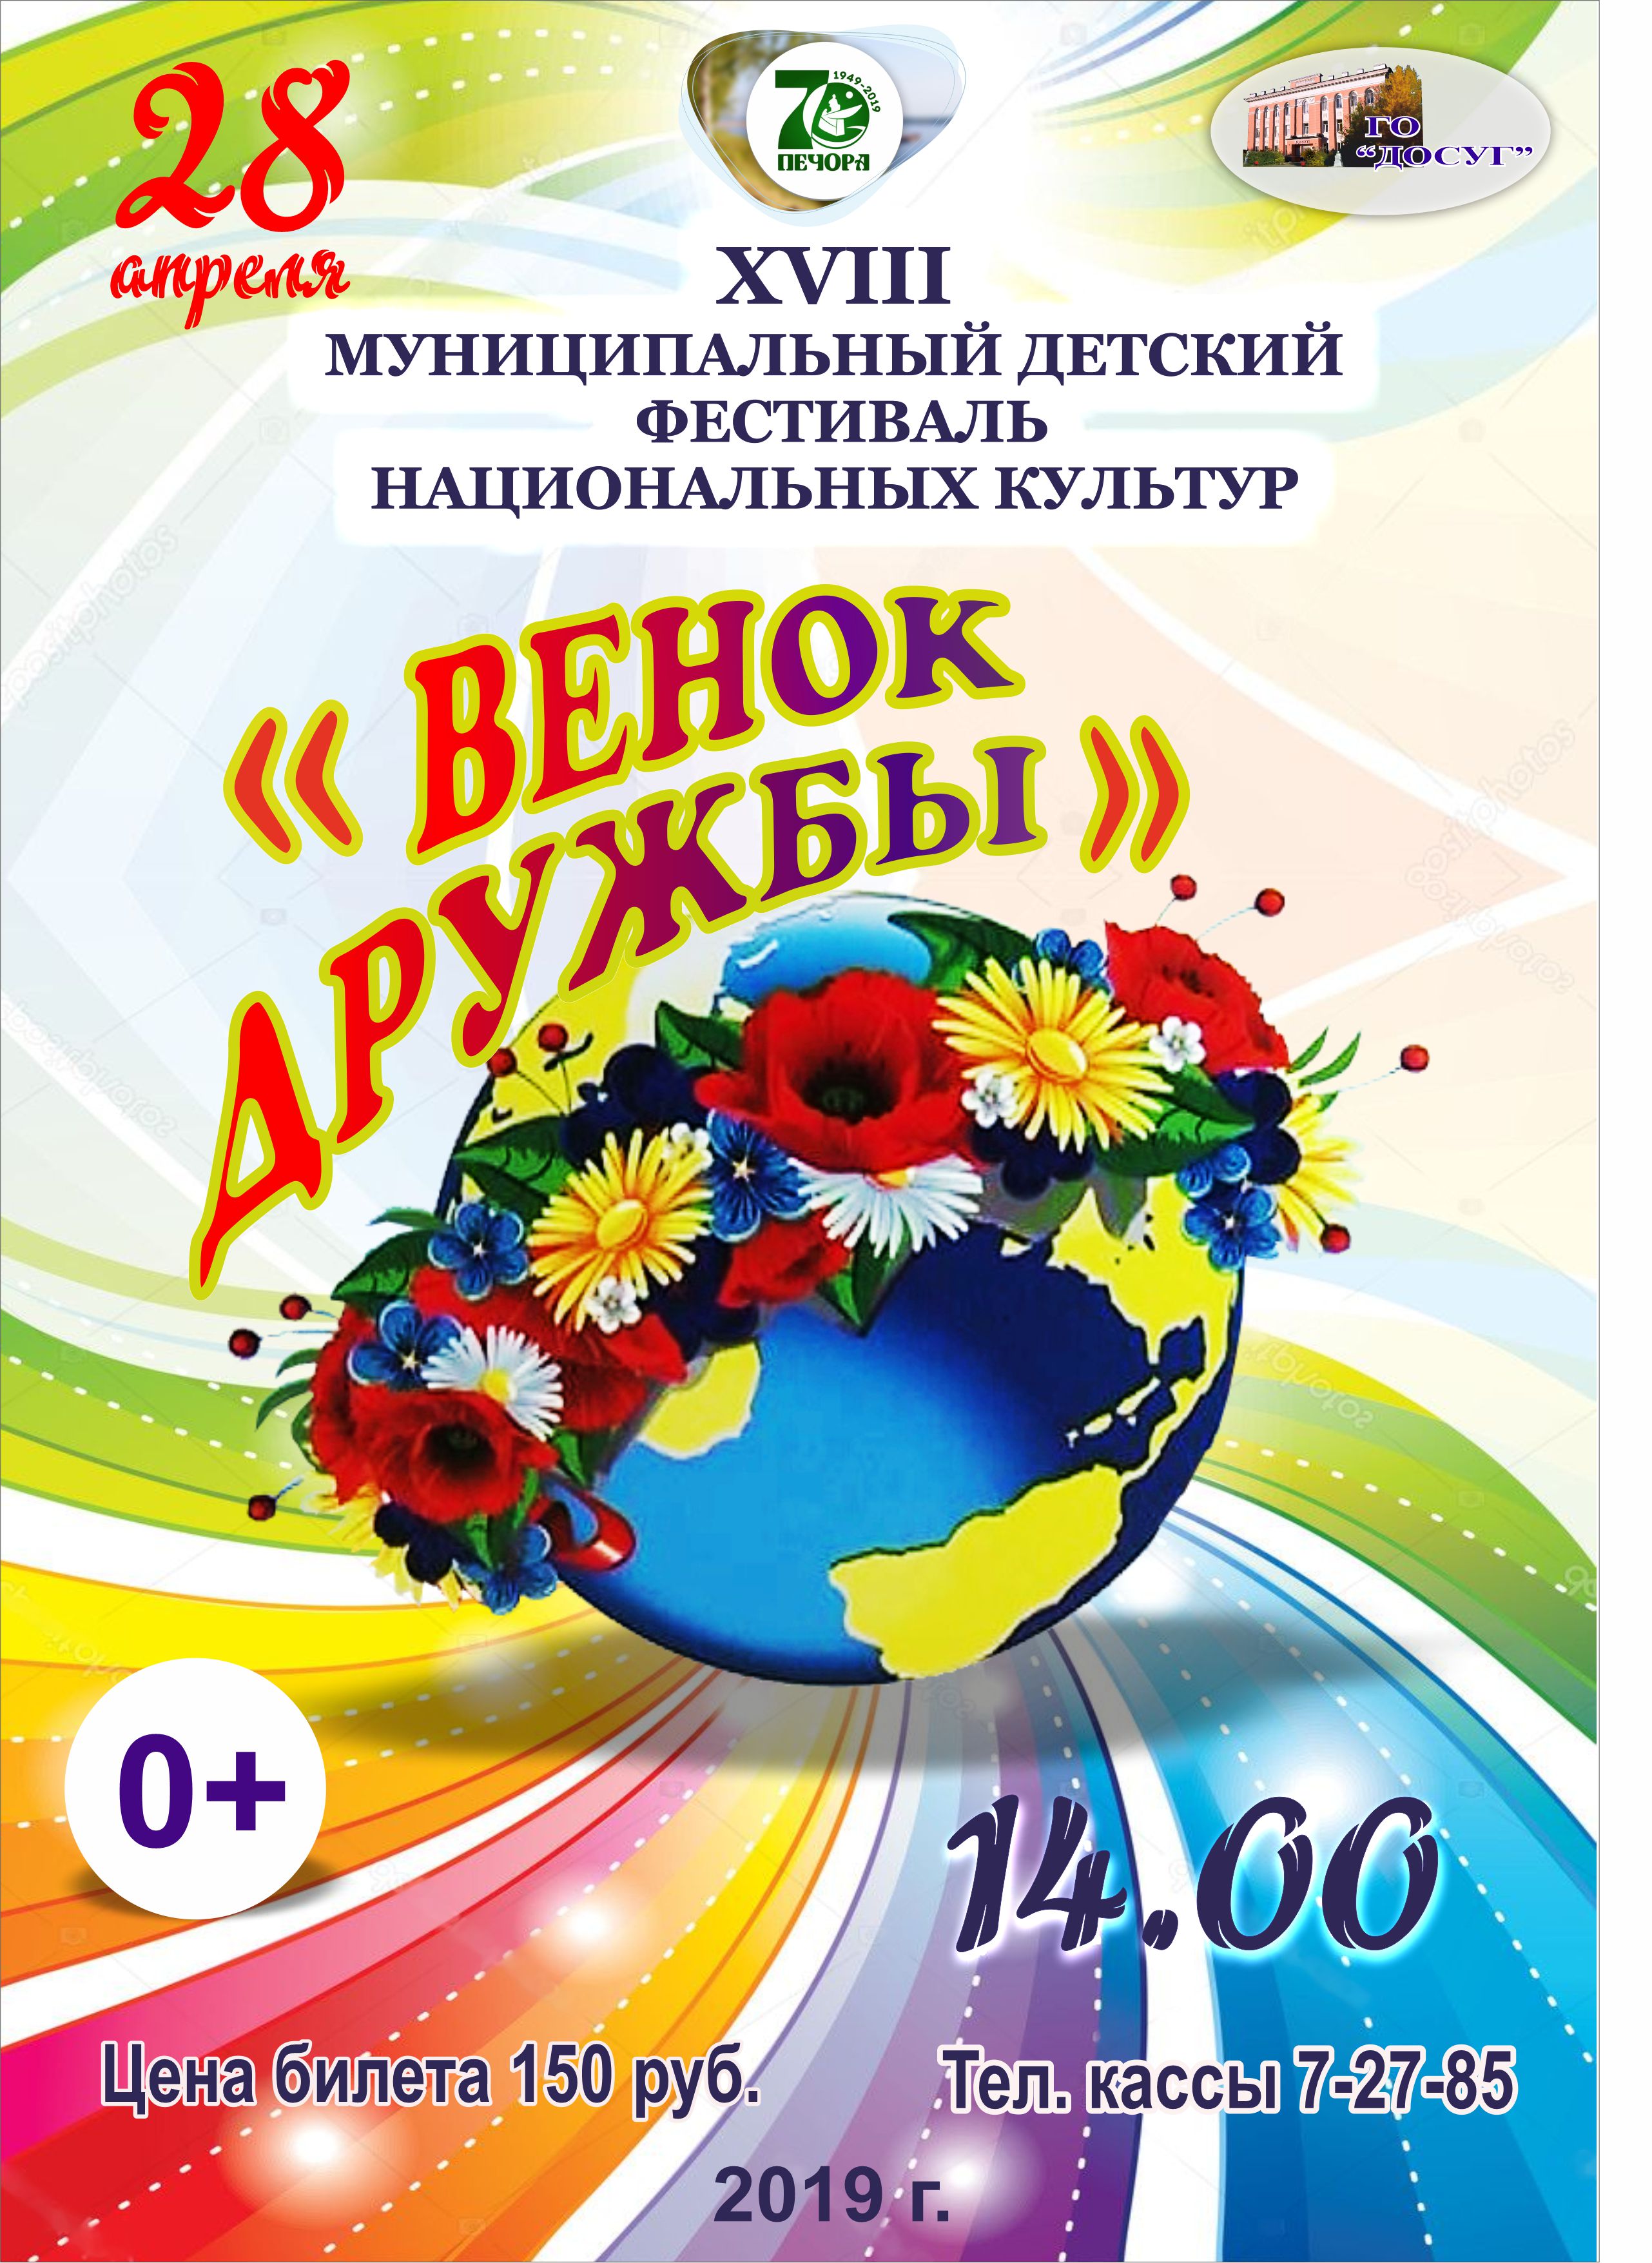 —- 28 апреля в 14.00 XVIII муниципальный детский фестиваль национальных культур  «Венок дружбы» цена билета: 150 руб. возрастной ценз 0+